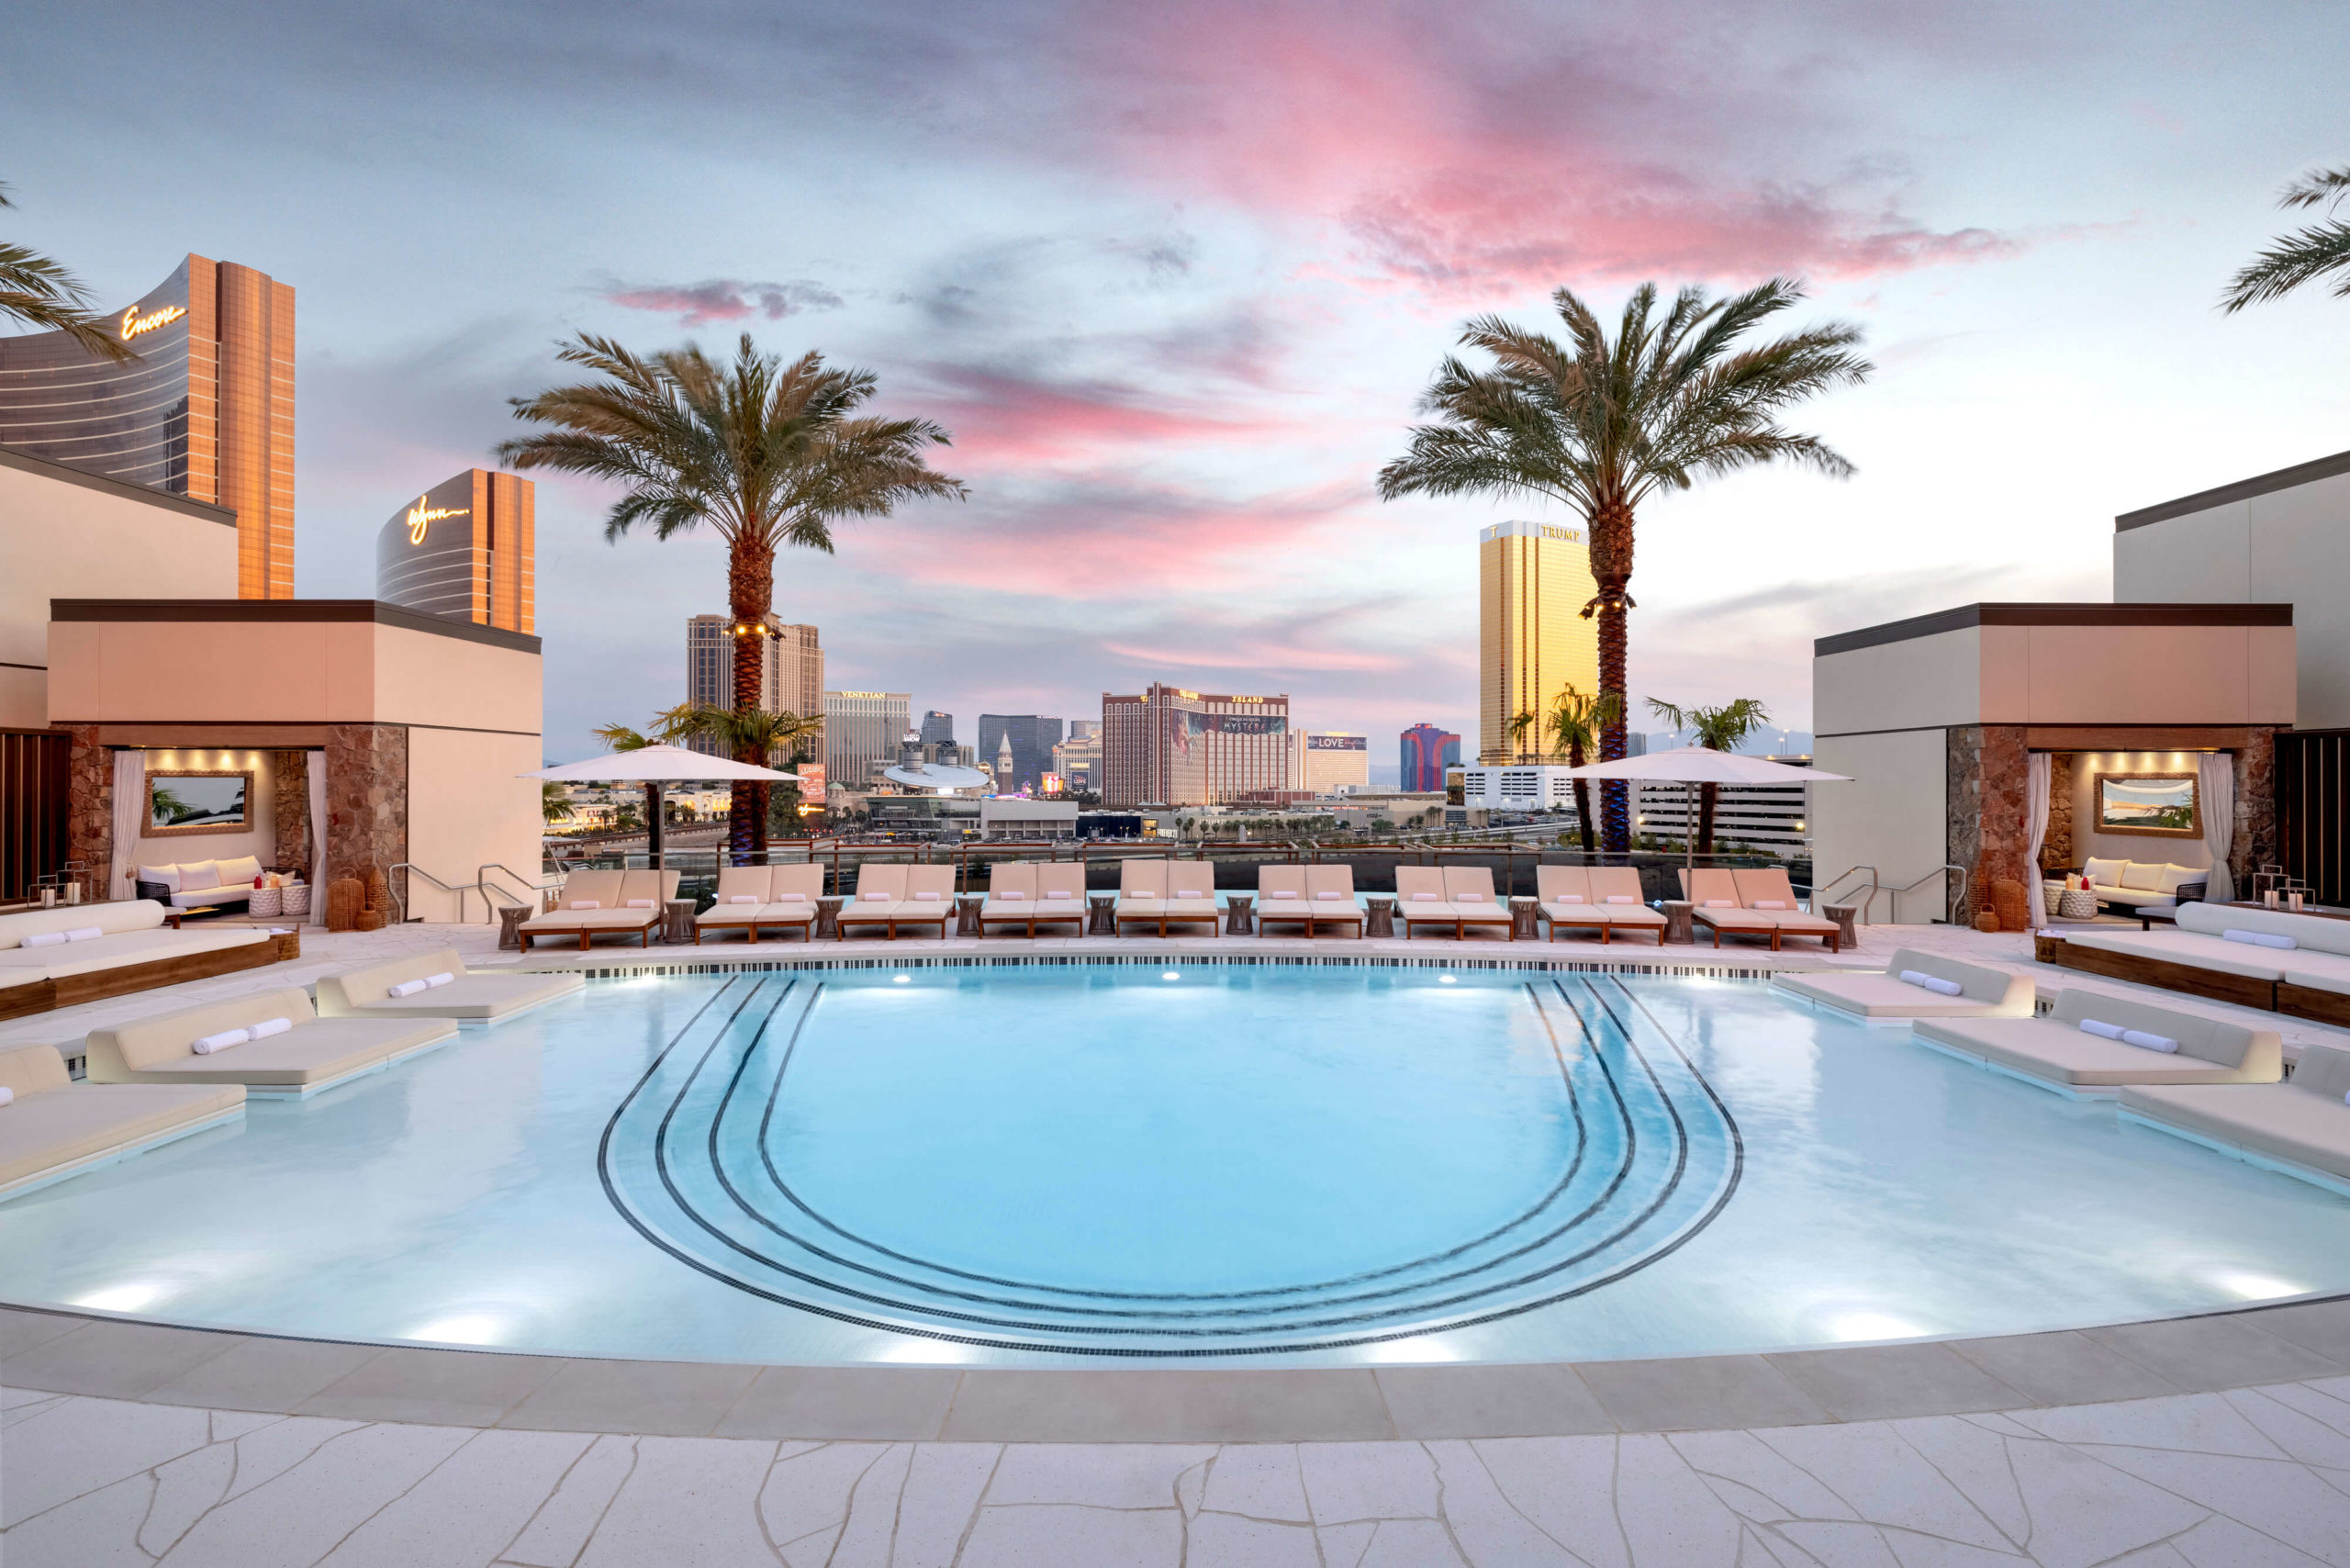 The Pool at Harrah's  Harrah's Las Vegas Hotel & Casino